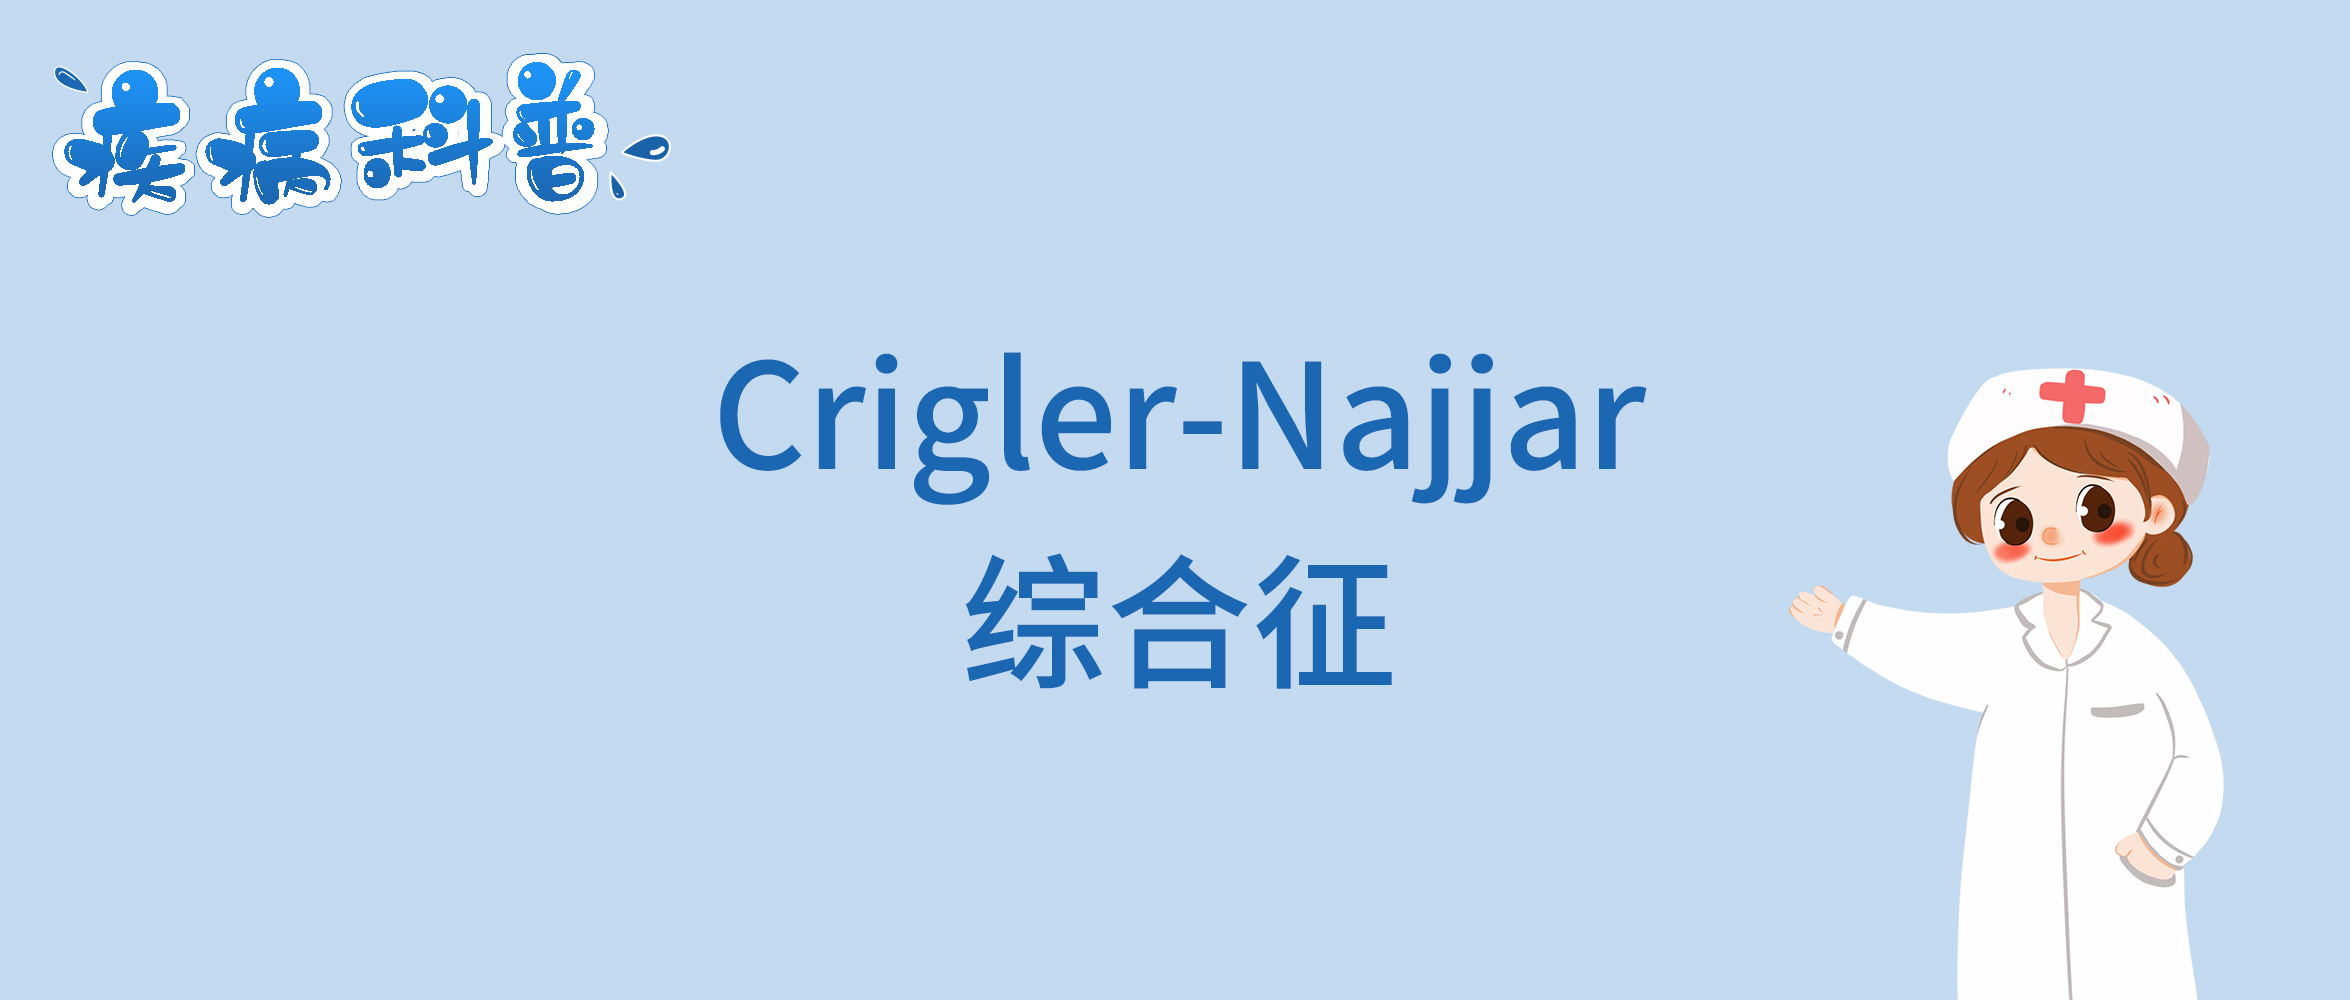 Crigler-Najjar综合征_看图王.jpg